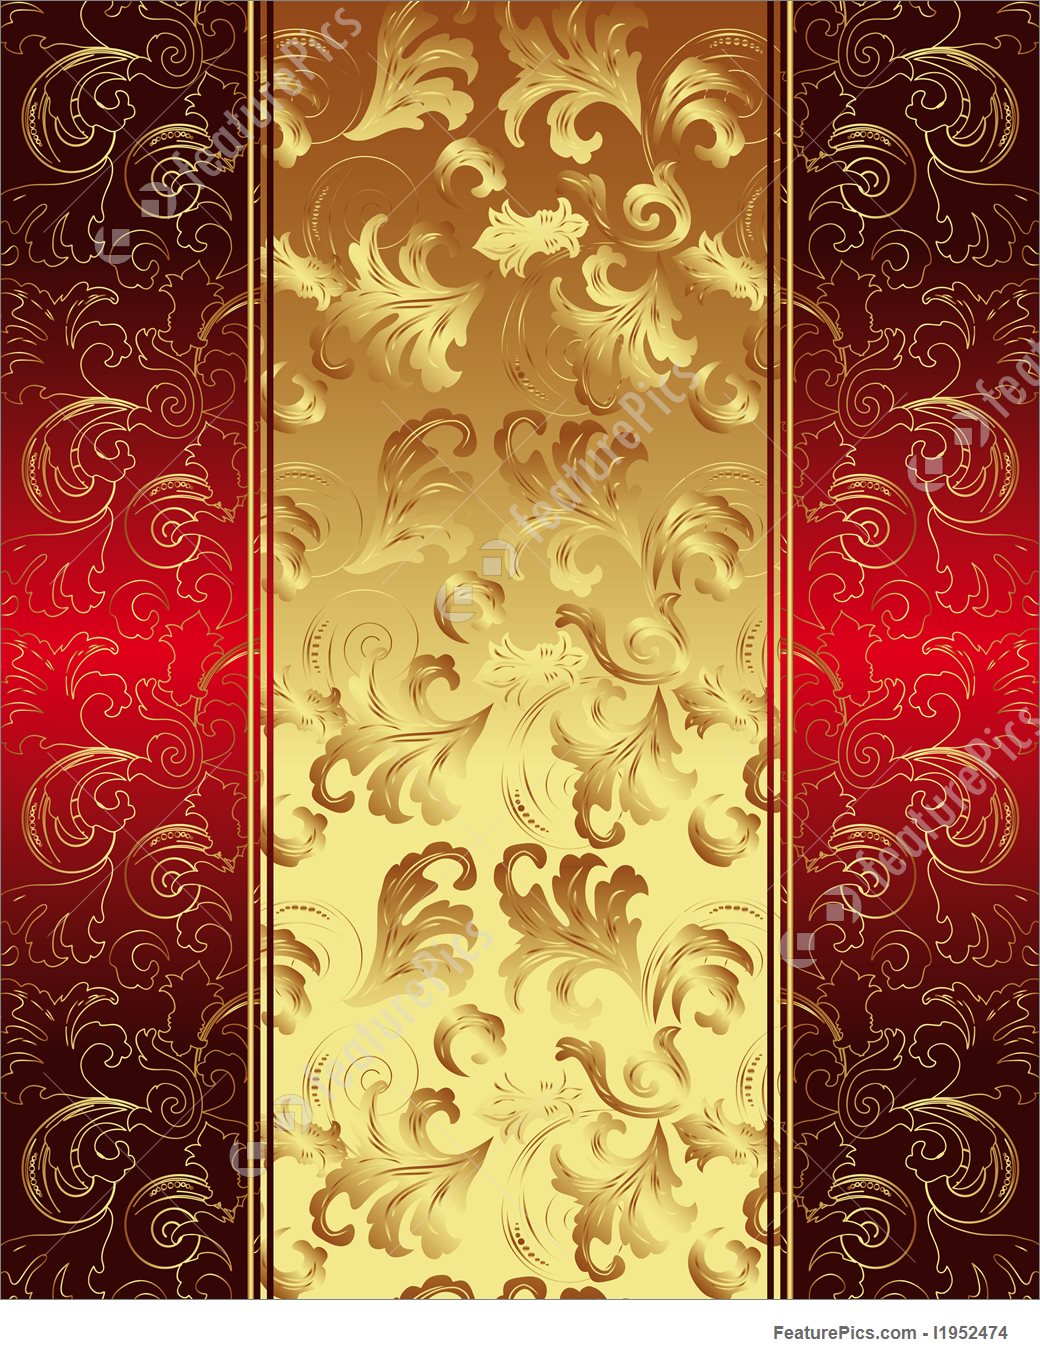 Golden wallpaper